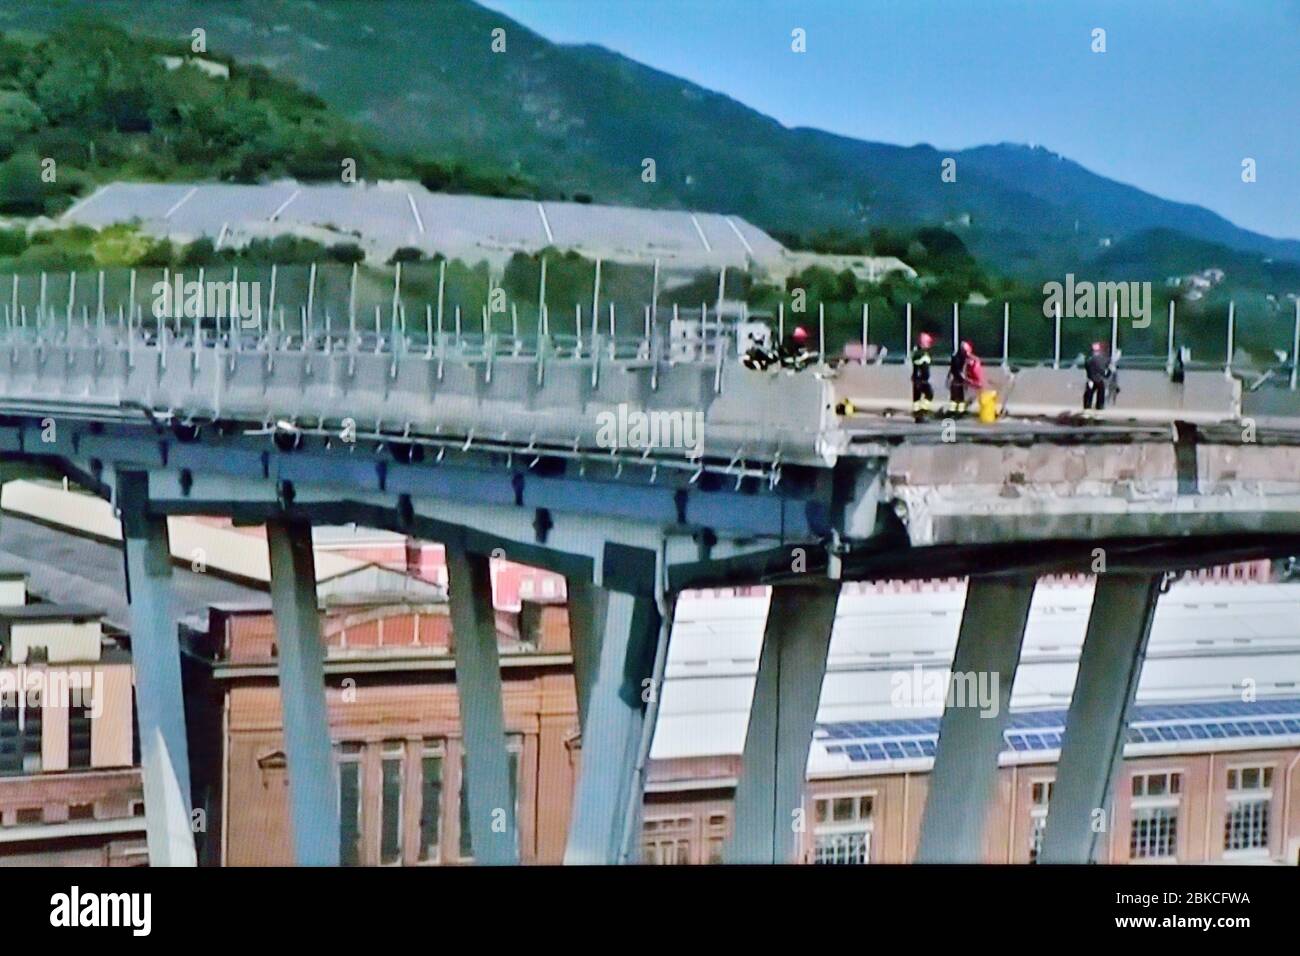 Genua, Italien, Detail der eingestürzten Morandi-Brücke mit Feuerwehrleuten (polcevera Viadukt), Autobahn A10 nach strukturellem Versagen, das 43 Tote verursachte - 14. August 2018 Stockfoto